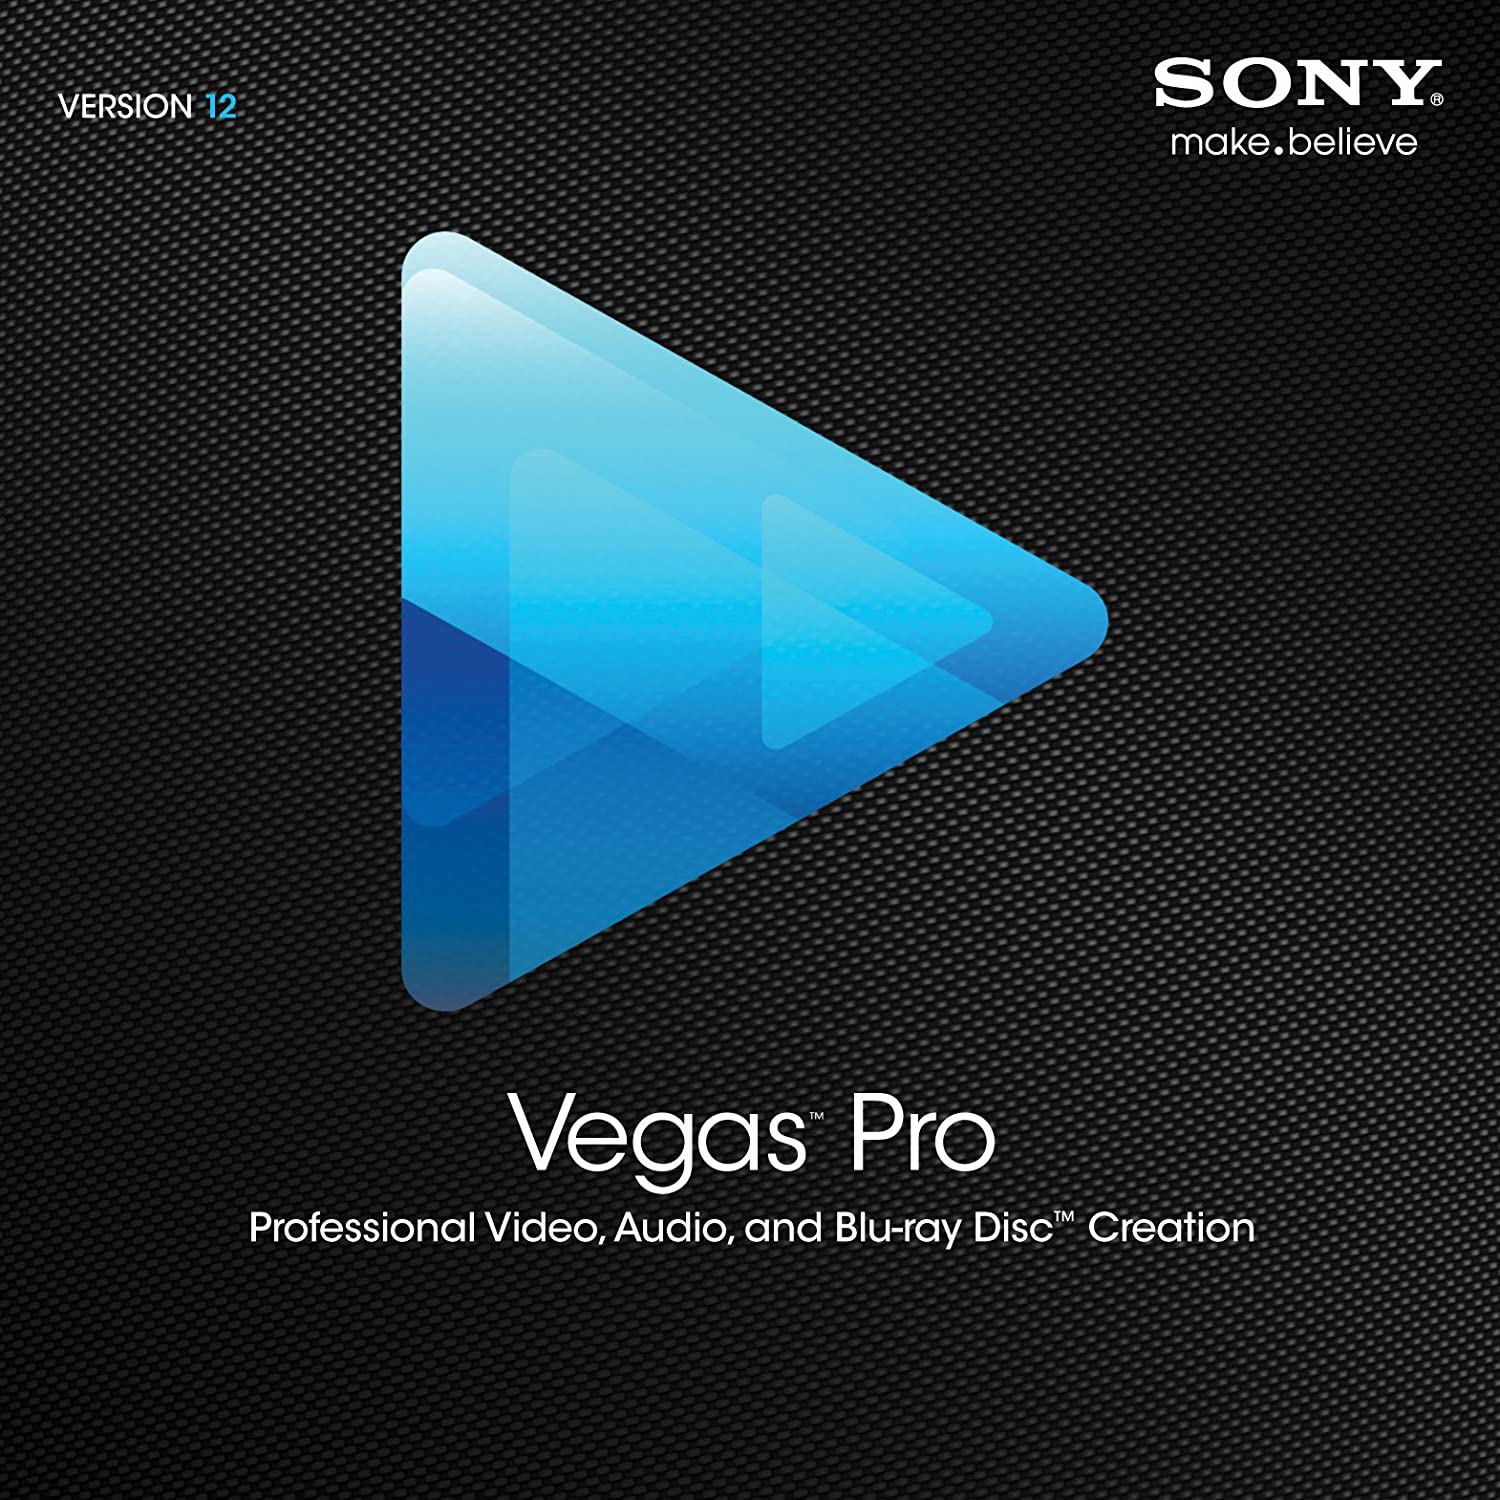 Vegas Pro For Mac Free Download